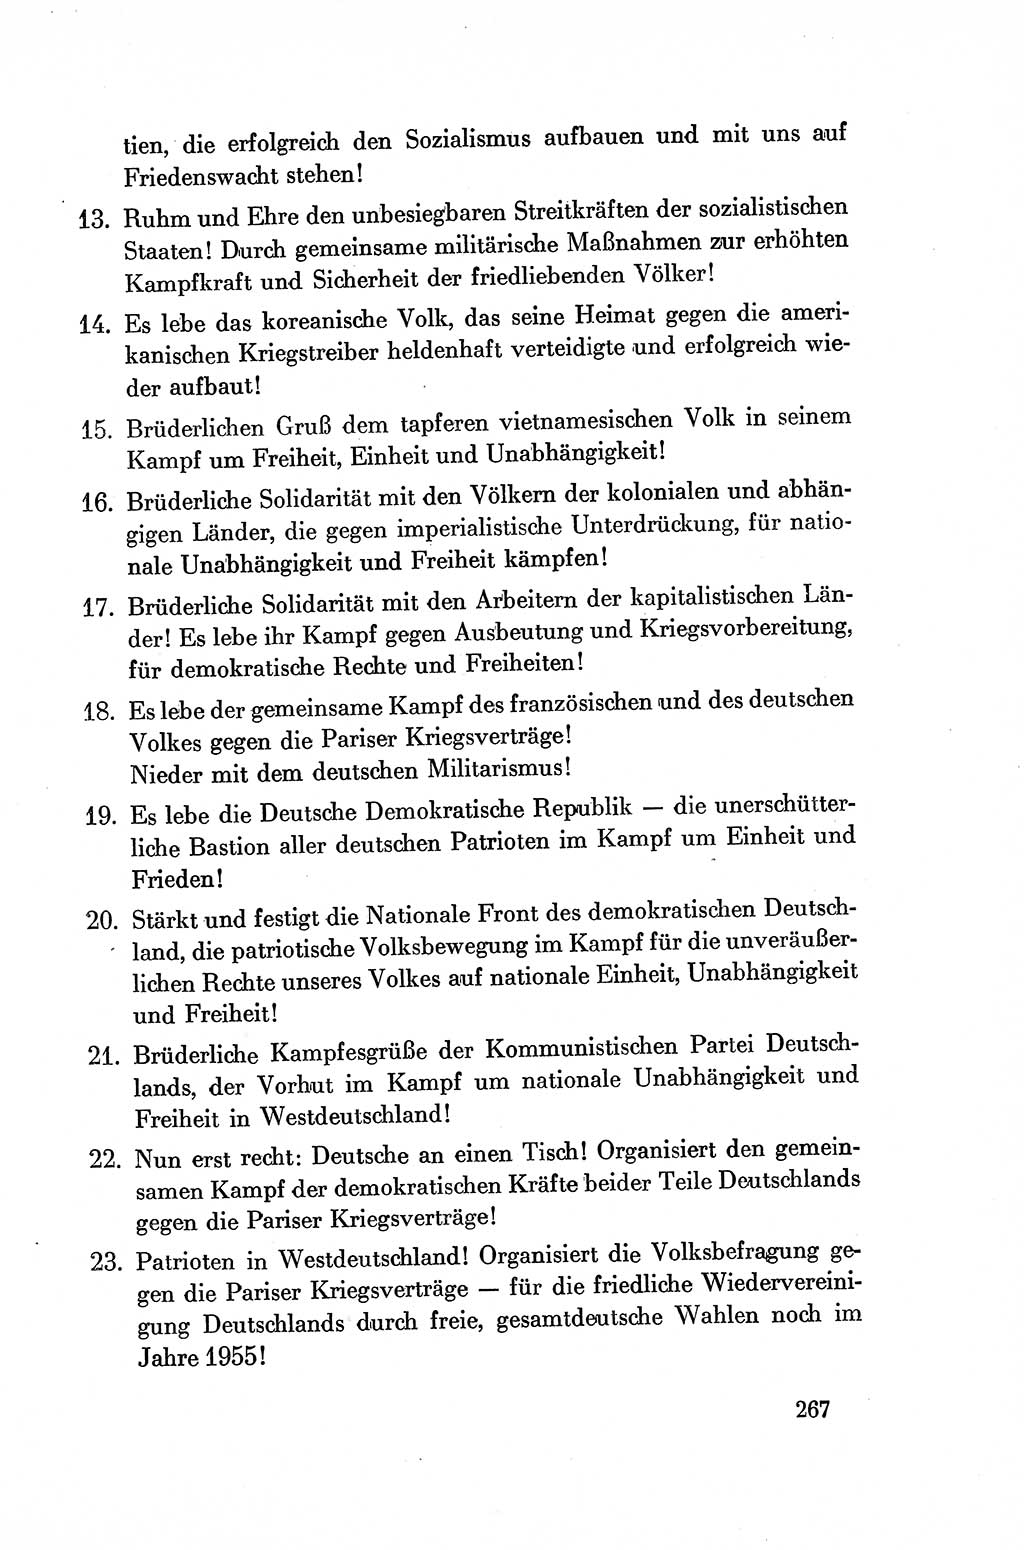 Dokumente der Sozialistischen Einheitspartei Deutschlands (SED) [Deutsche Demokratische Republik (DDR)] 1954-1955, Seite 267 (Dok. SED DDR 1954-1955, S. 267)